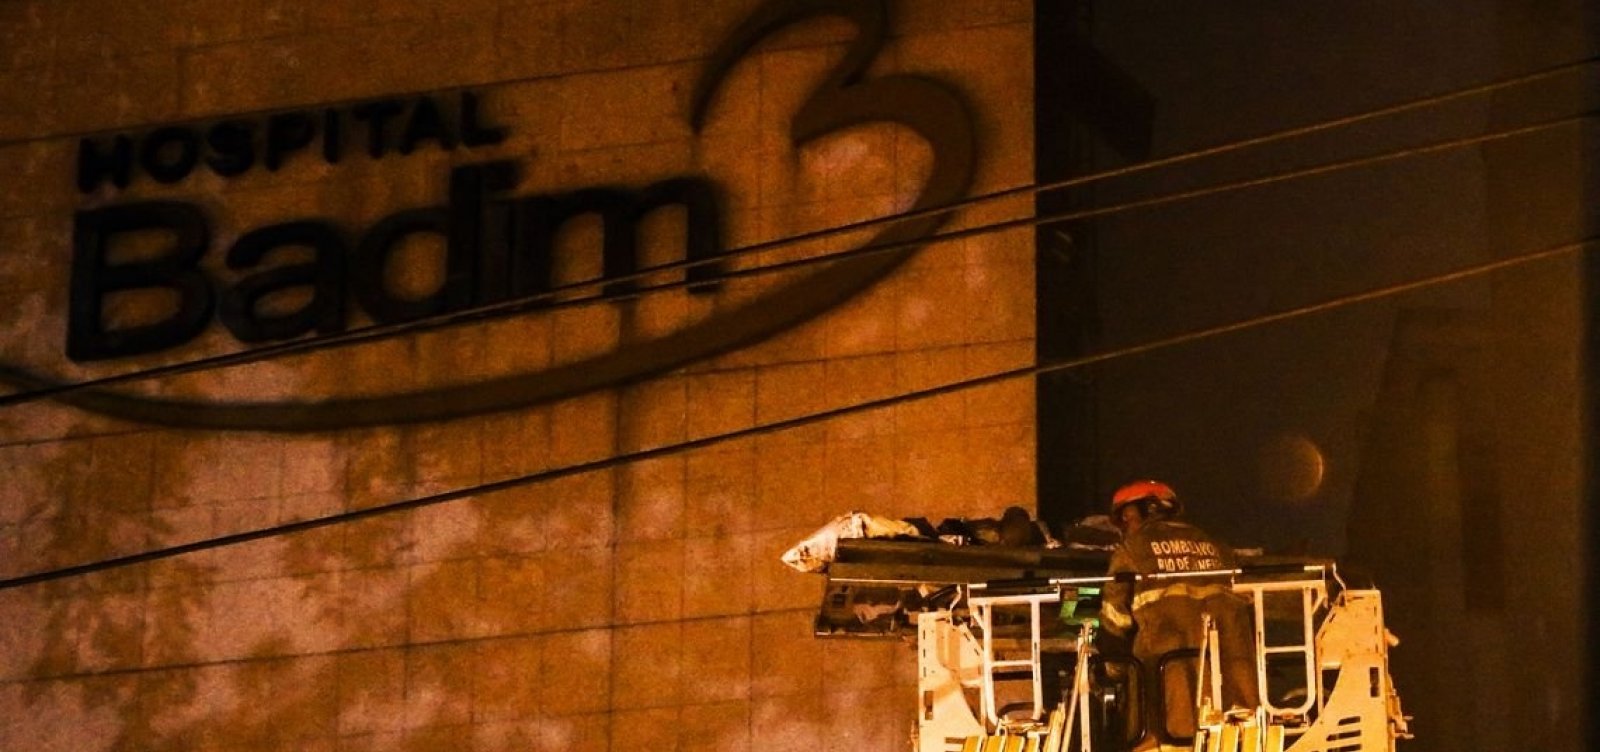 Morre 13ª vítima de incêndio em hospital no Rio